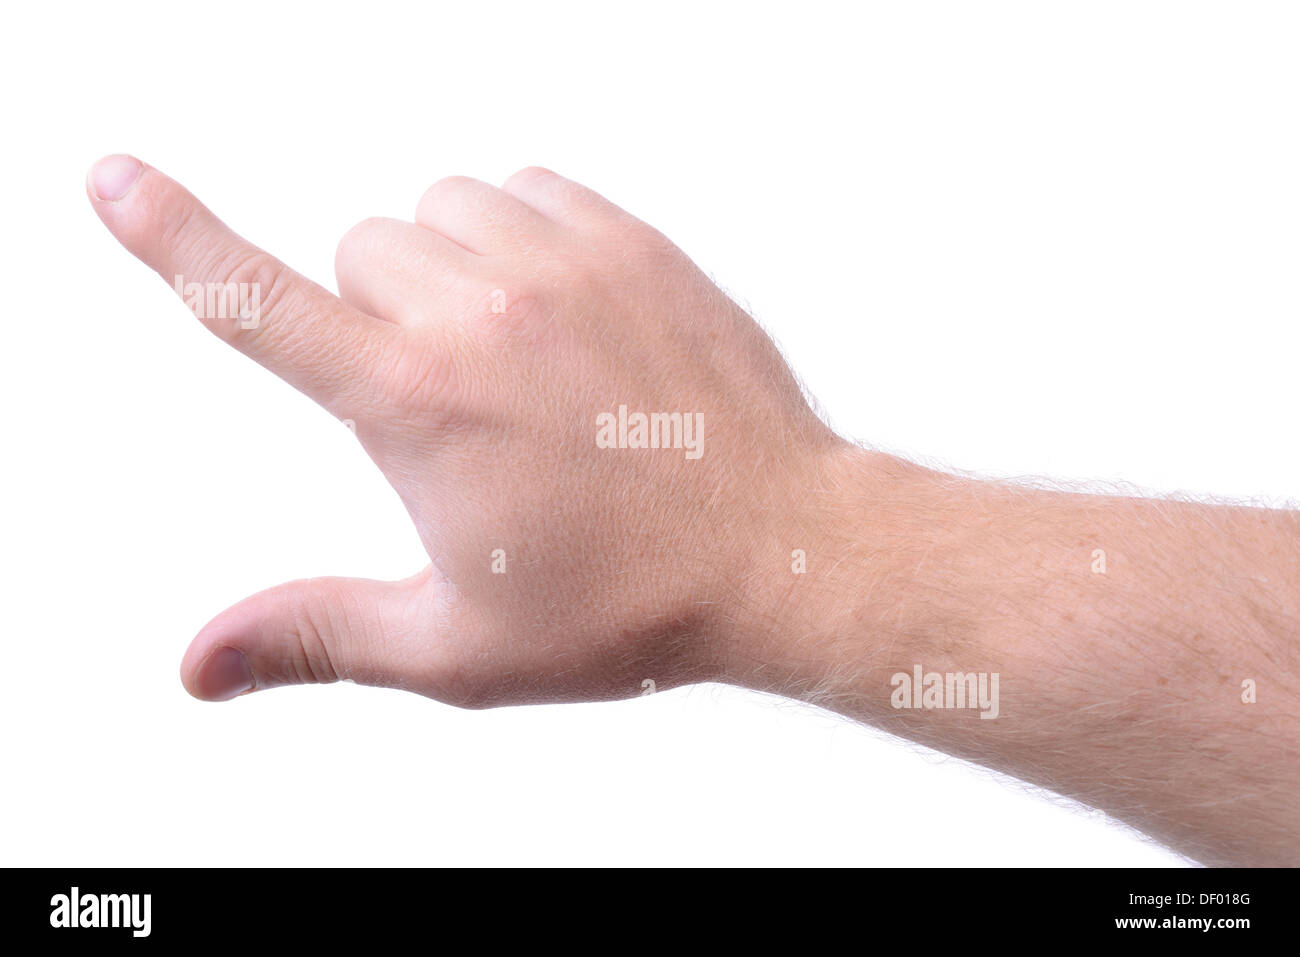 Man mano utilizzando il dito per interazione con un oggetto isolato su bianco Foto Stock